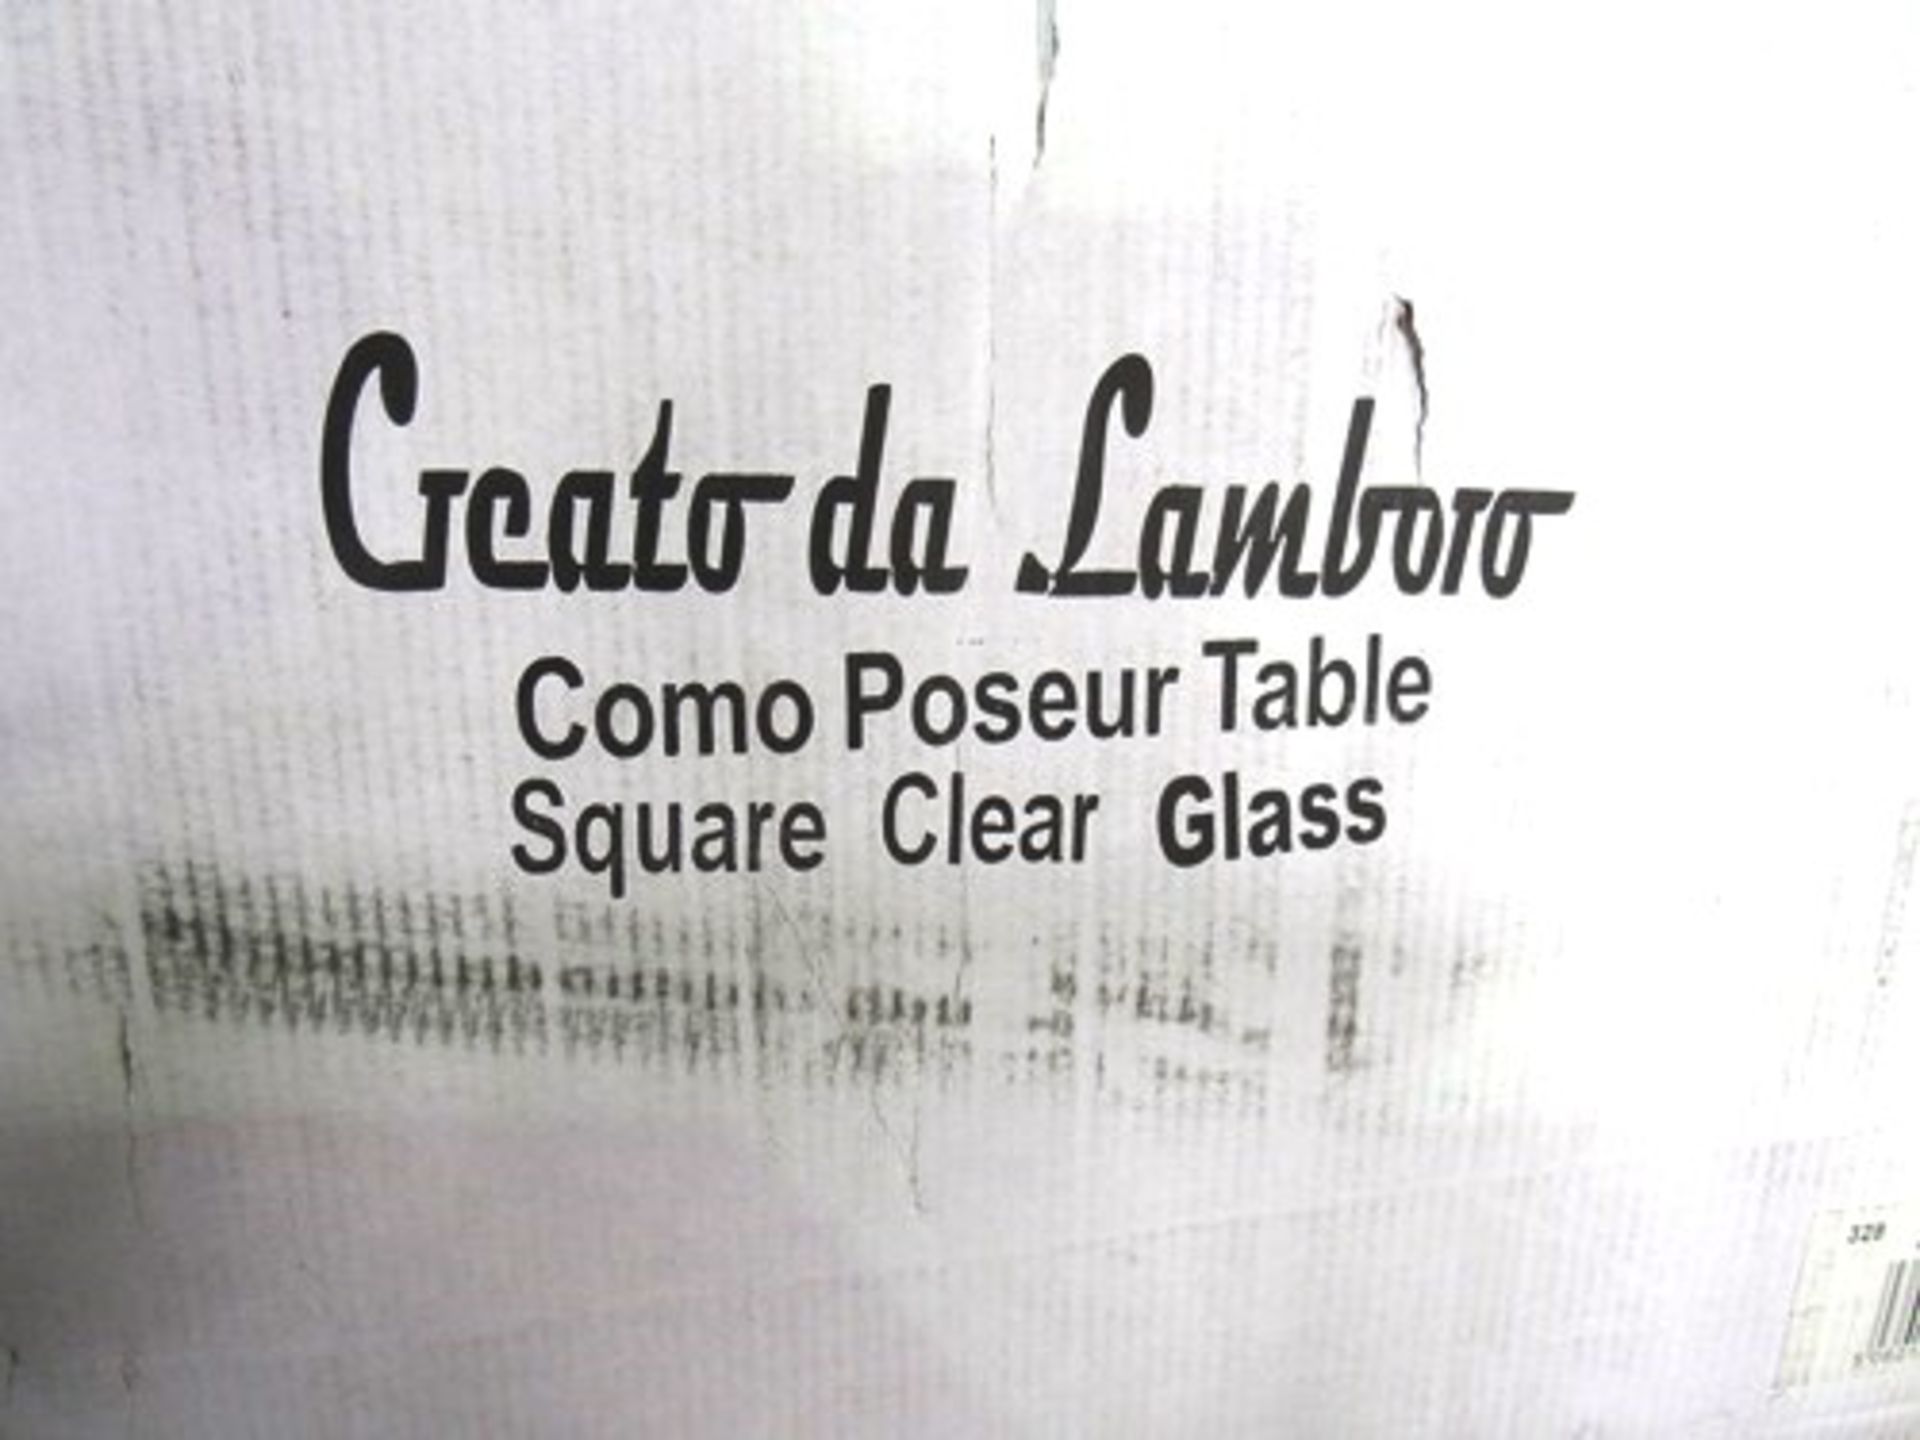 2 x Creato da Lamboro Carcaso black bar stools together with 1 x Creato da Lamboro clear glass table - Image 3 of 3